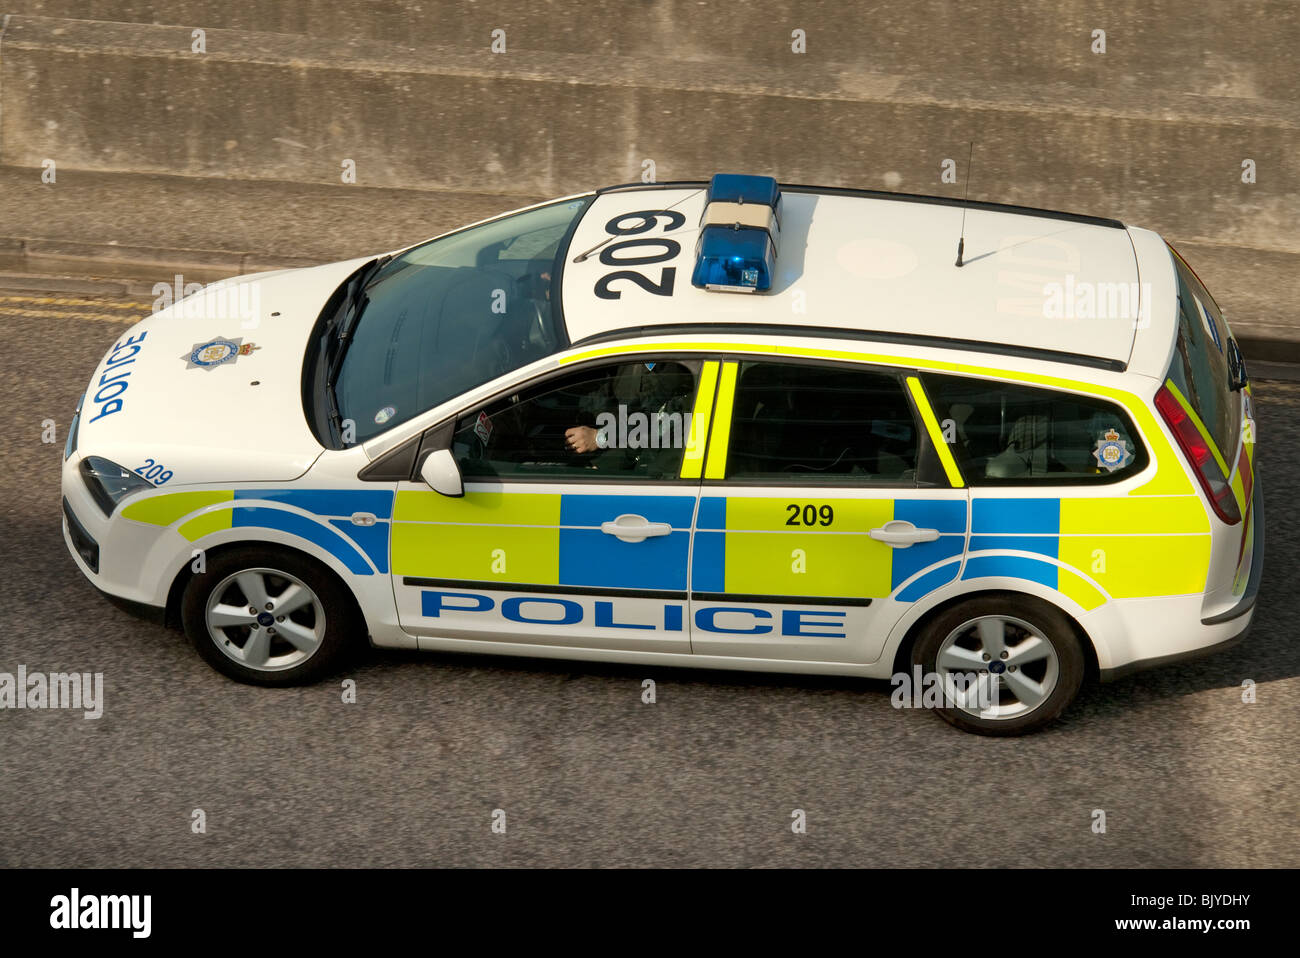 police car Stock Photo